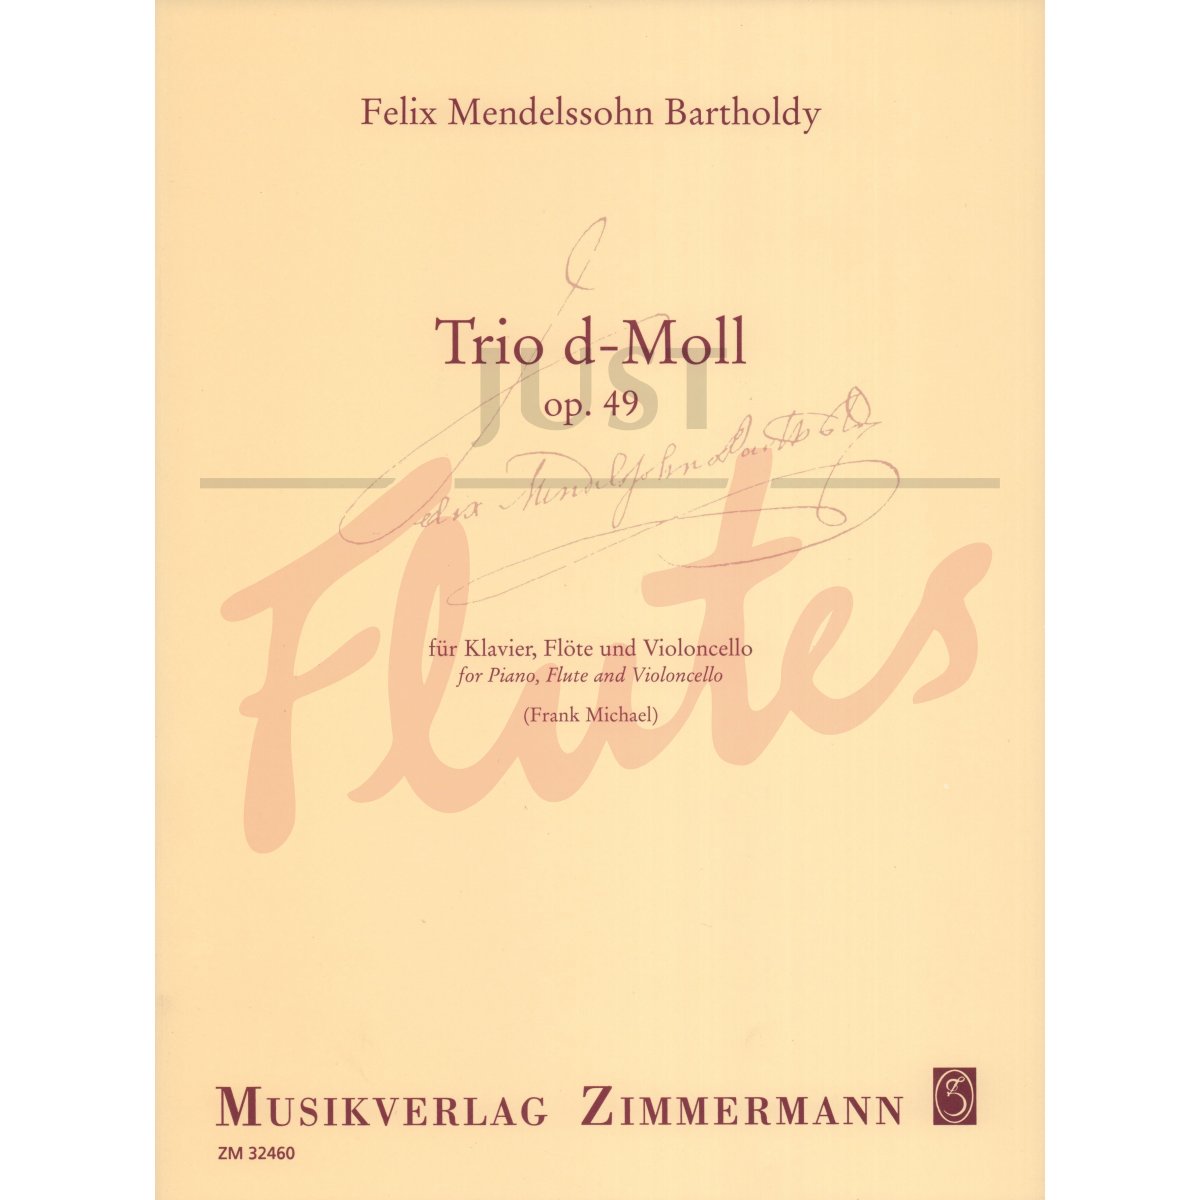 Trio in D minor for Flute, Cello and Piano